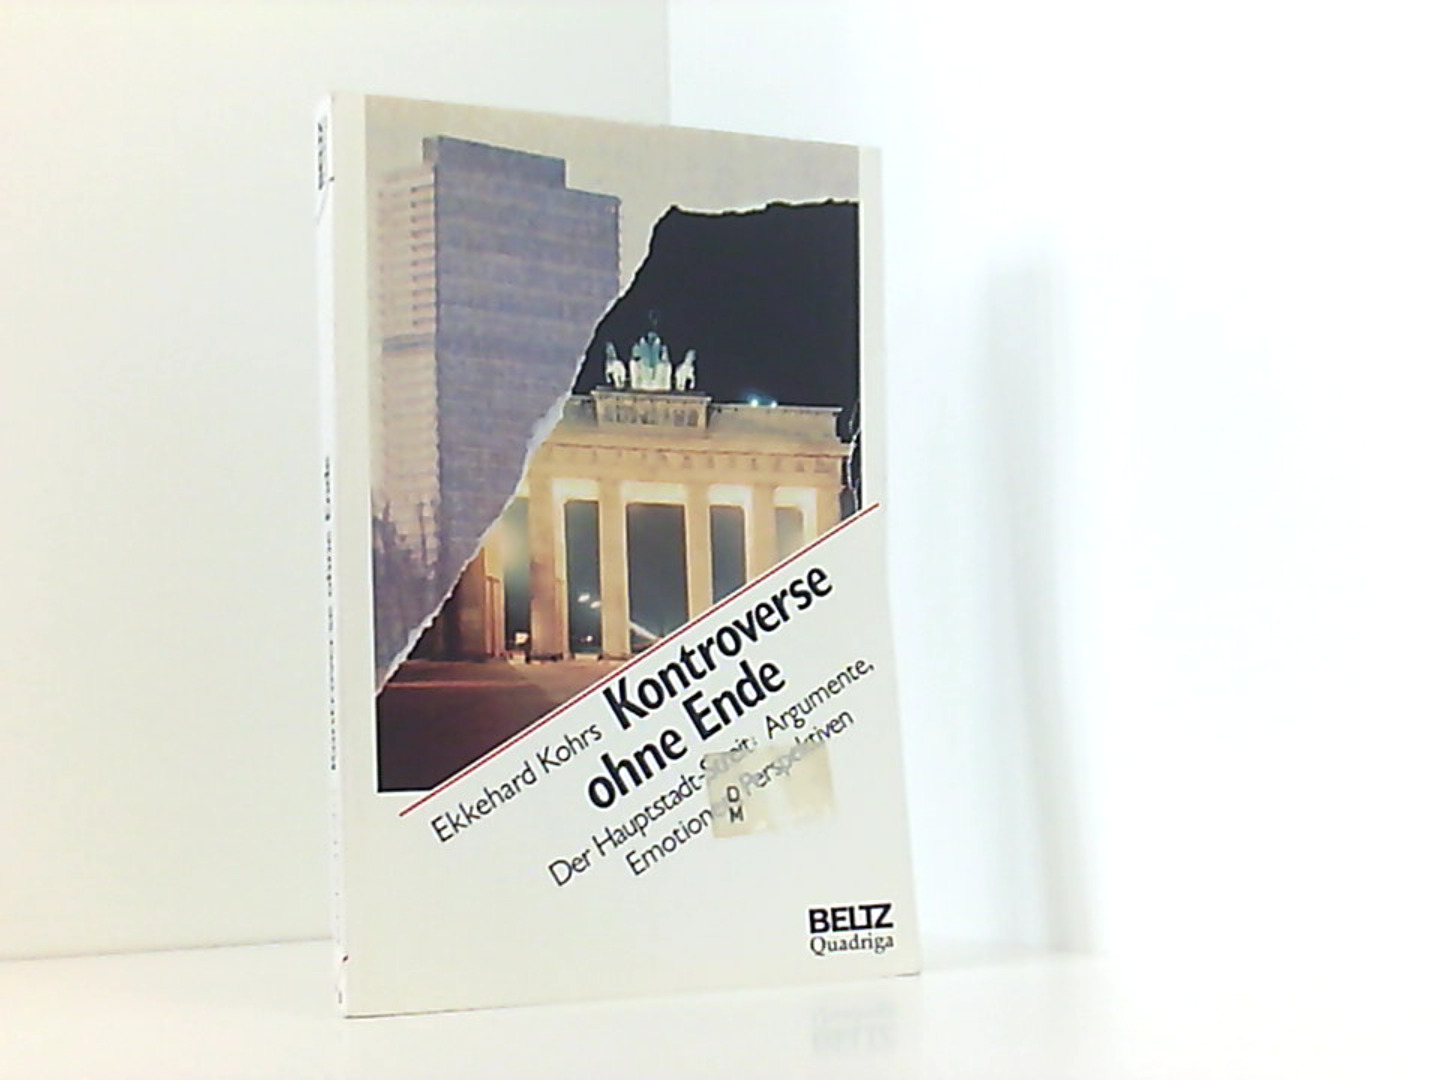 Kontroverse ohne Ende: Der Hauptstadt-Streit - Argumente - Emotionen - Perspektiven (Beltz /Quadriga-Taschenbuch) - Kohrs, Ekkehard